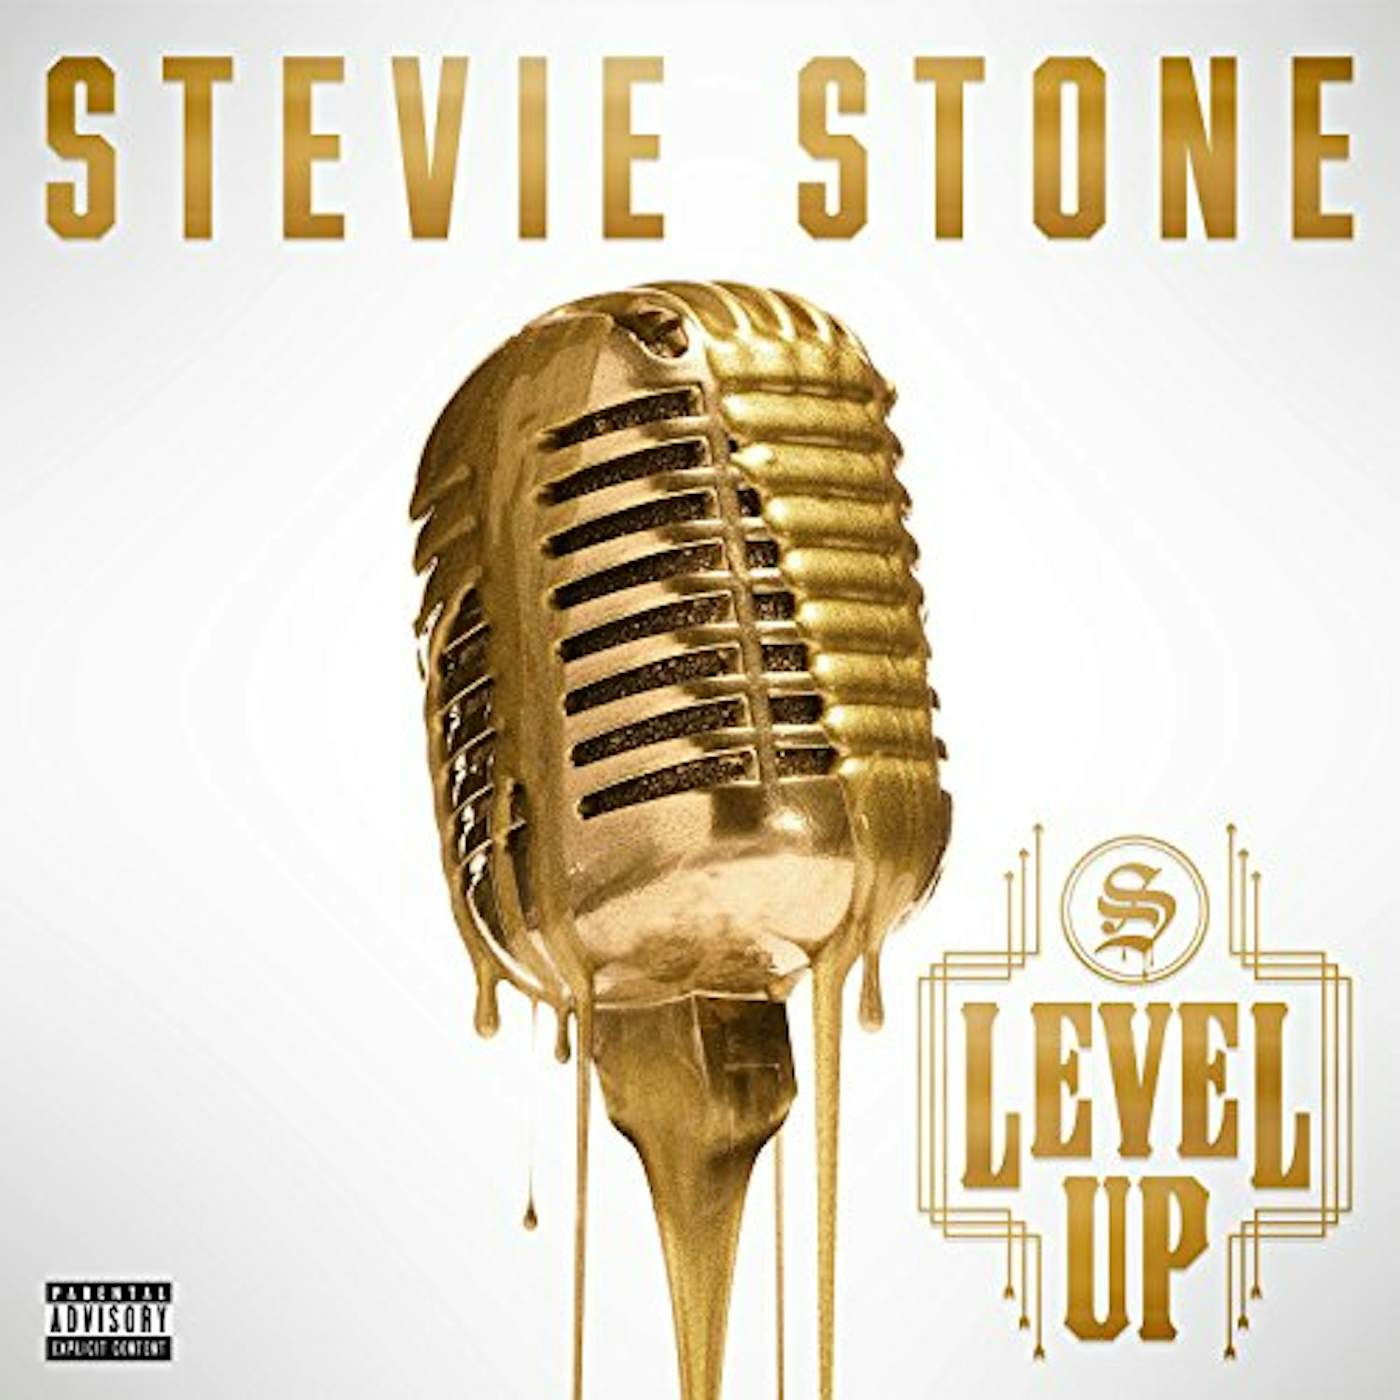 Stevie Stone LEVEL UP CD